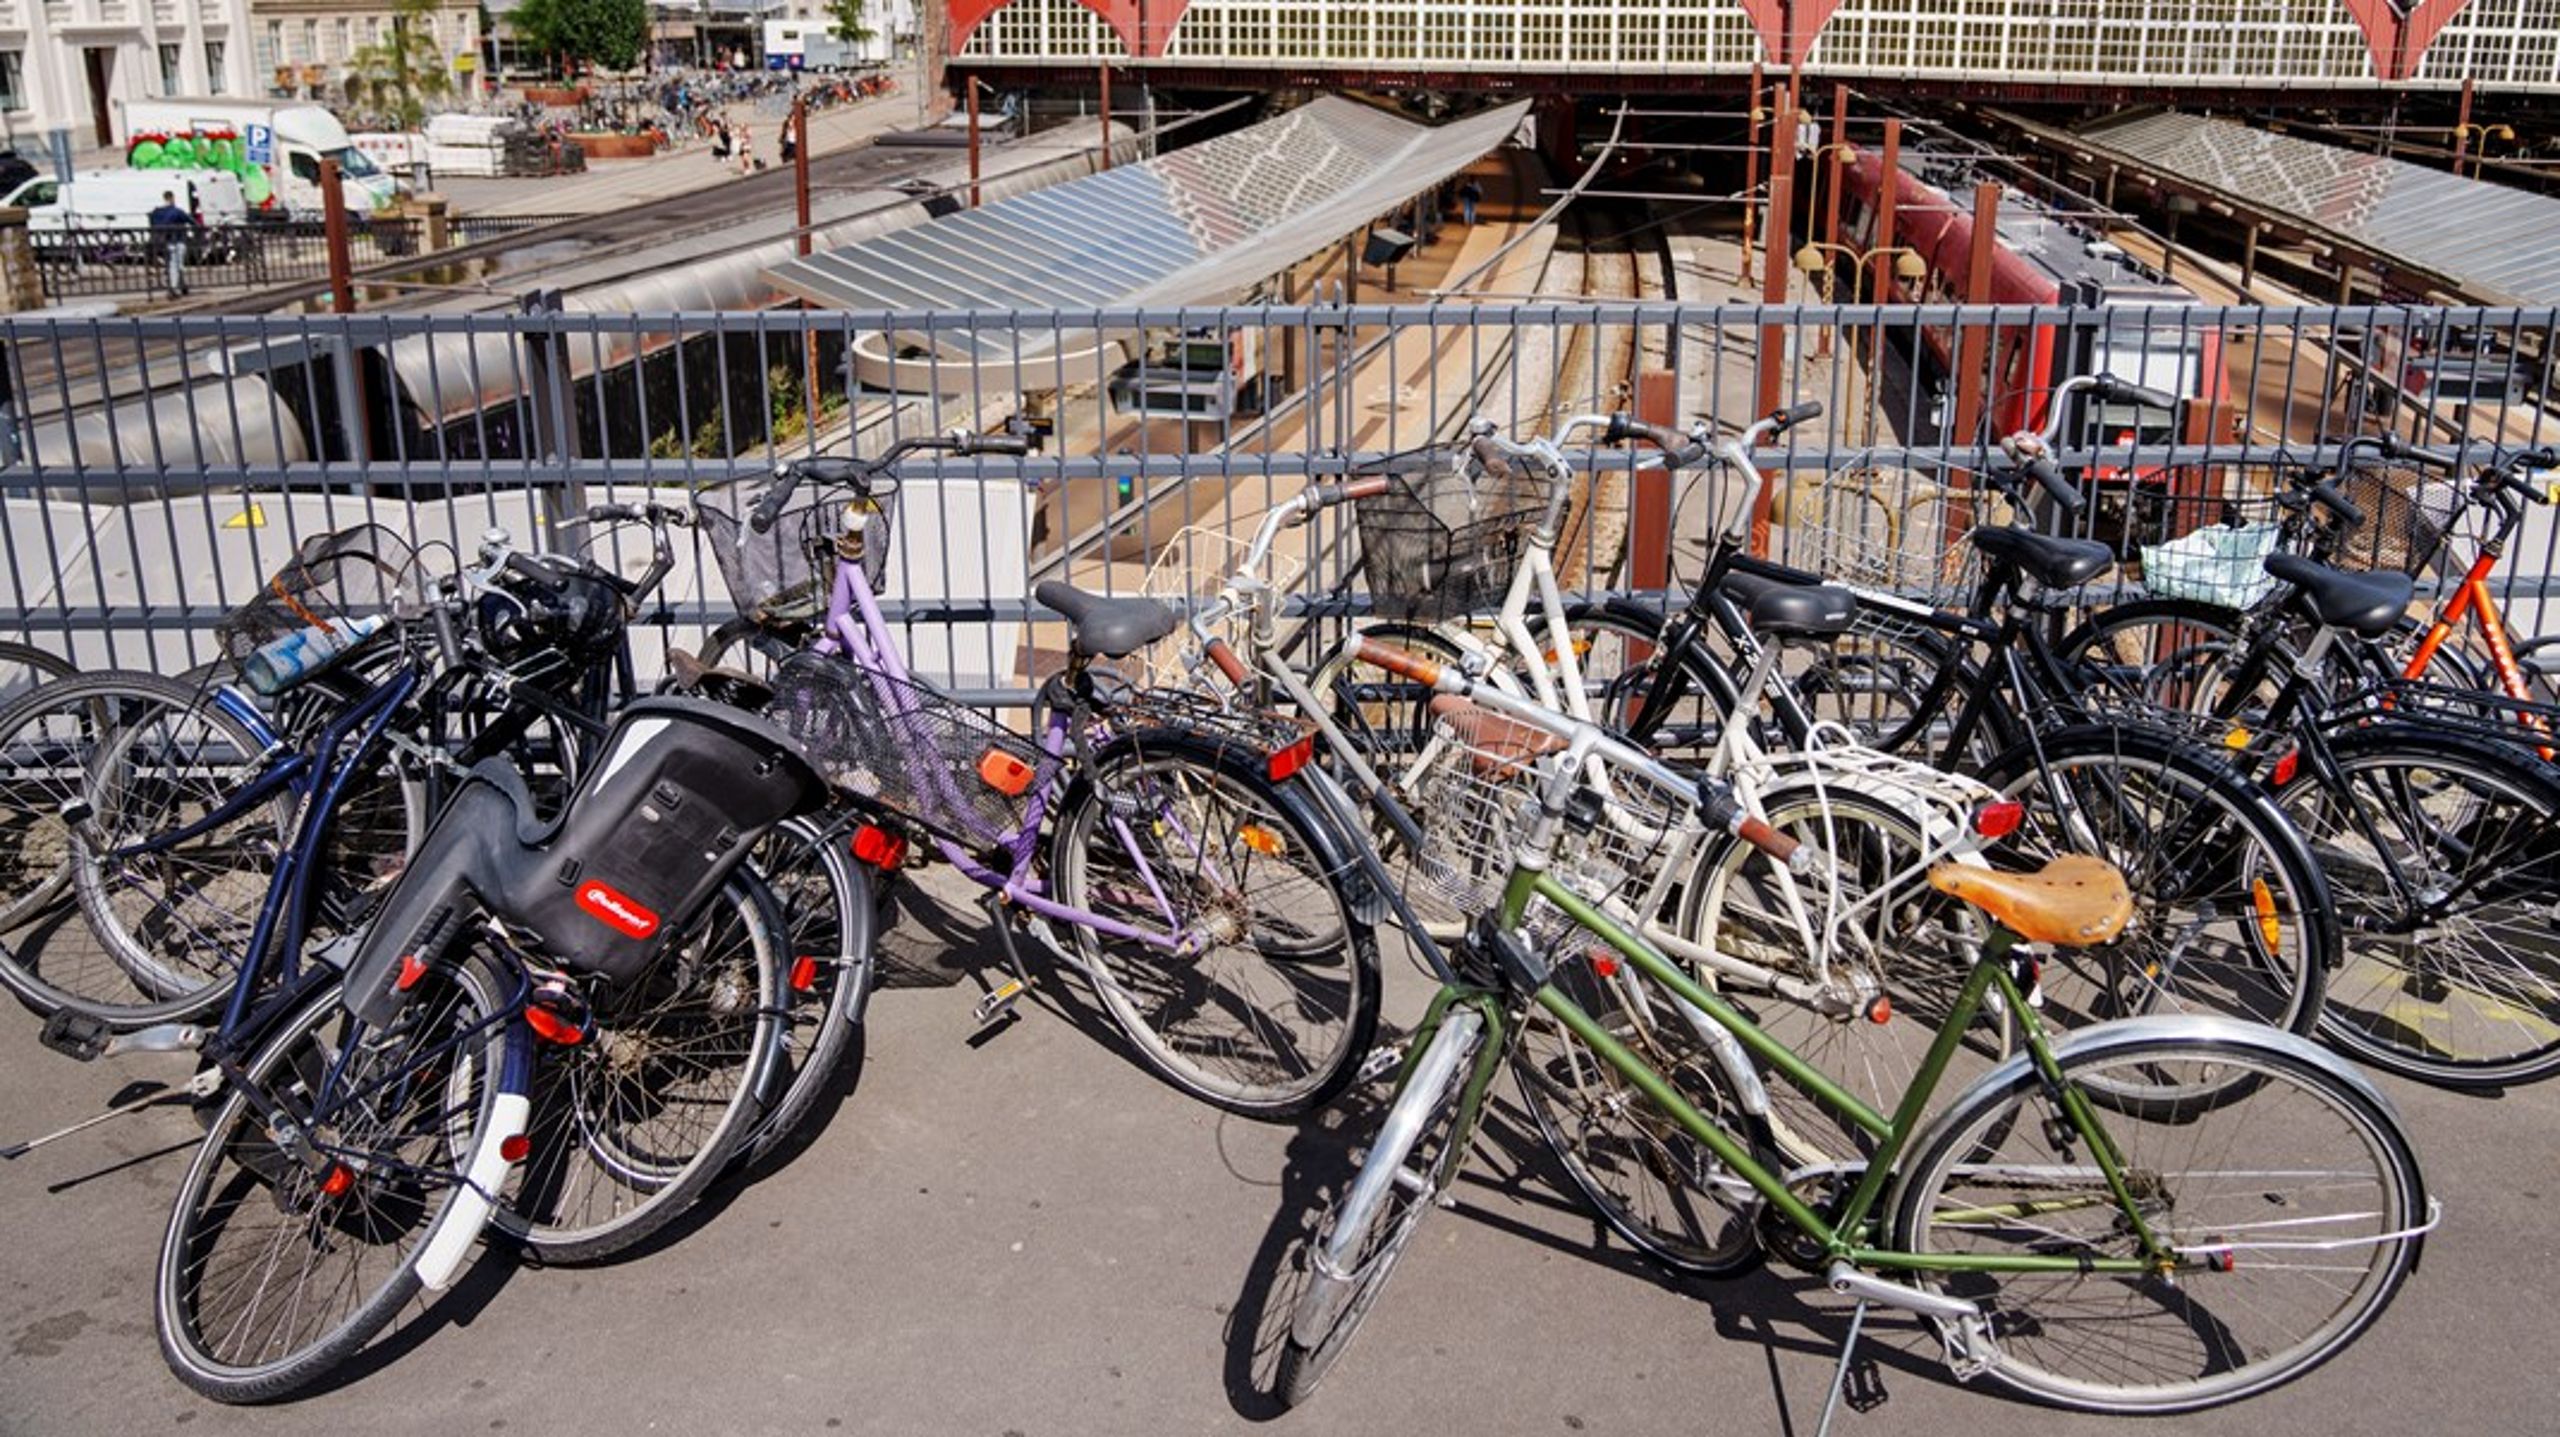 Cyklistforbundet er enig i, at København bør overveje at skabe en balance mellem cykler og biler, så ingen føler sig forfordelt.&nbsp;For i dag er bare&nbsp;syv&nbsp;procent af de offentlige gadearealer tildelt cyklisterne, som står for 25-30 procent af transporten, skriver Erik Hjulmand.